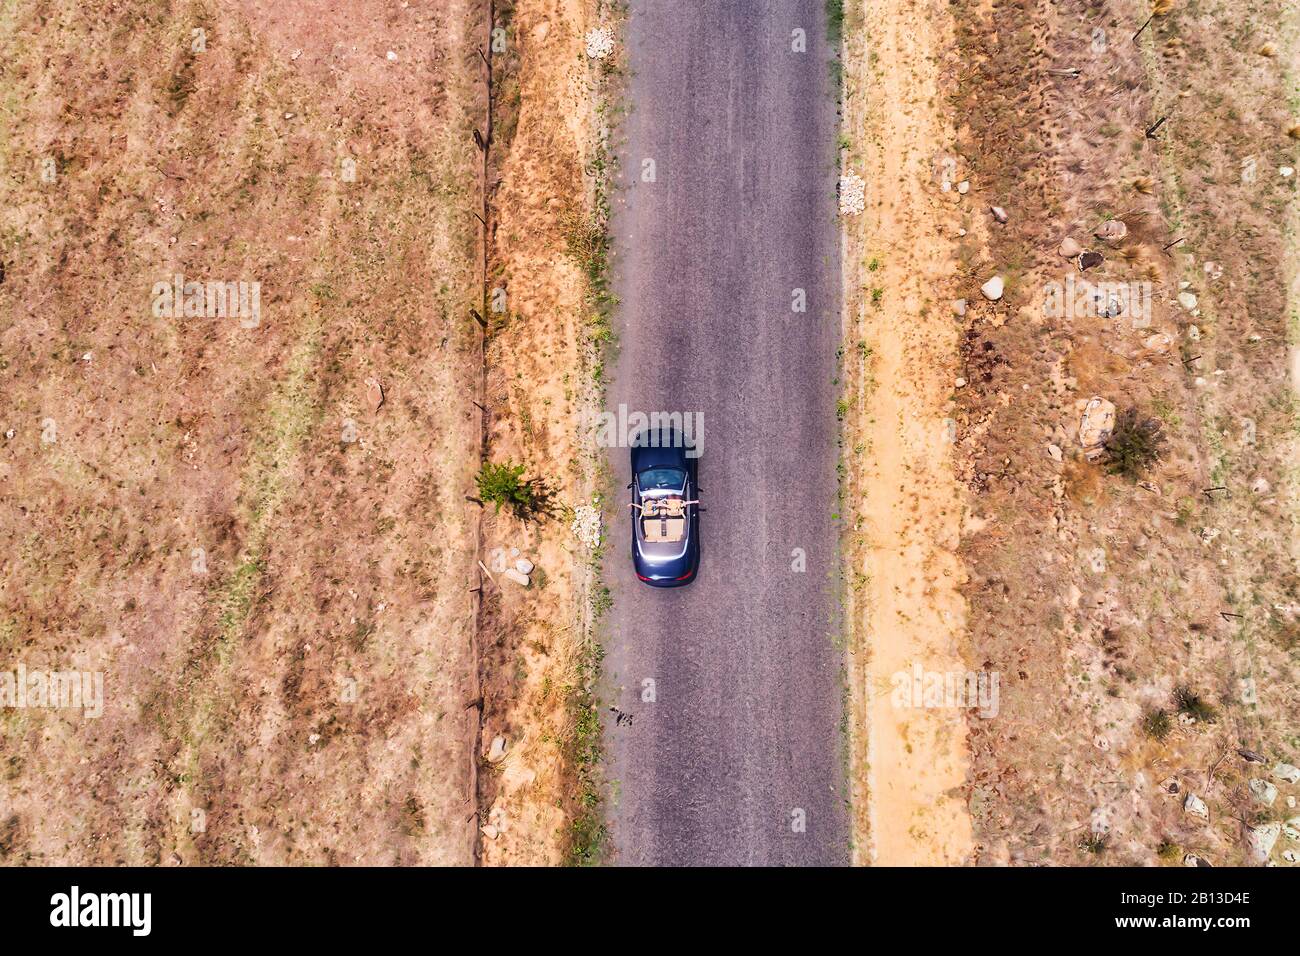 Fermes agricoles rurales éloignées le long de la route à une voie dans les montagnes Bleues australiennes avec voiture cabriolet de voyageurs conduisant des gens de vacances heureux. Banque D'Images